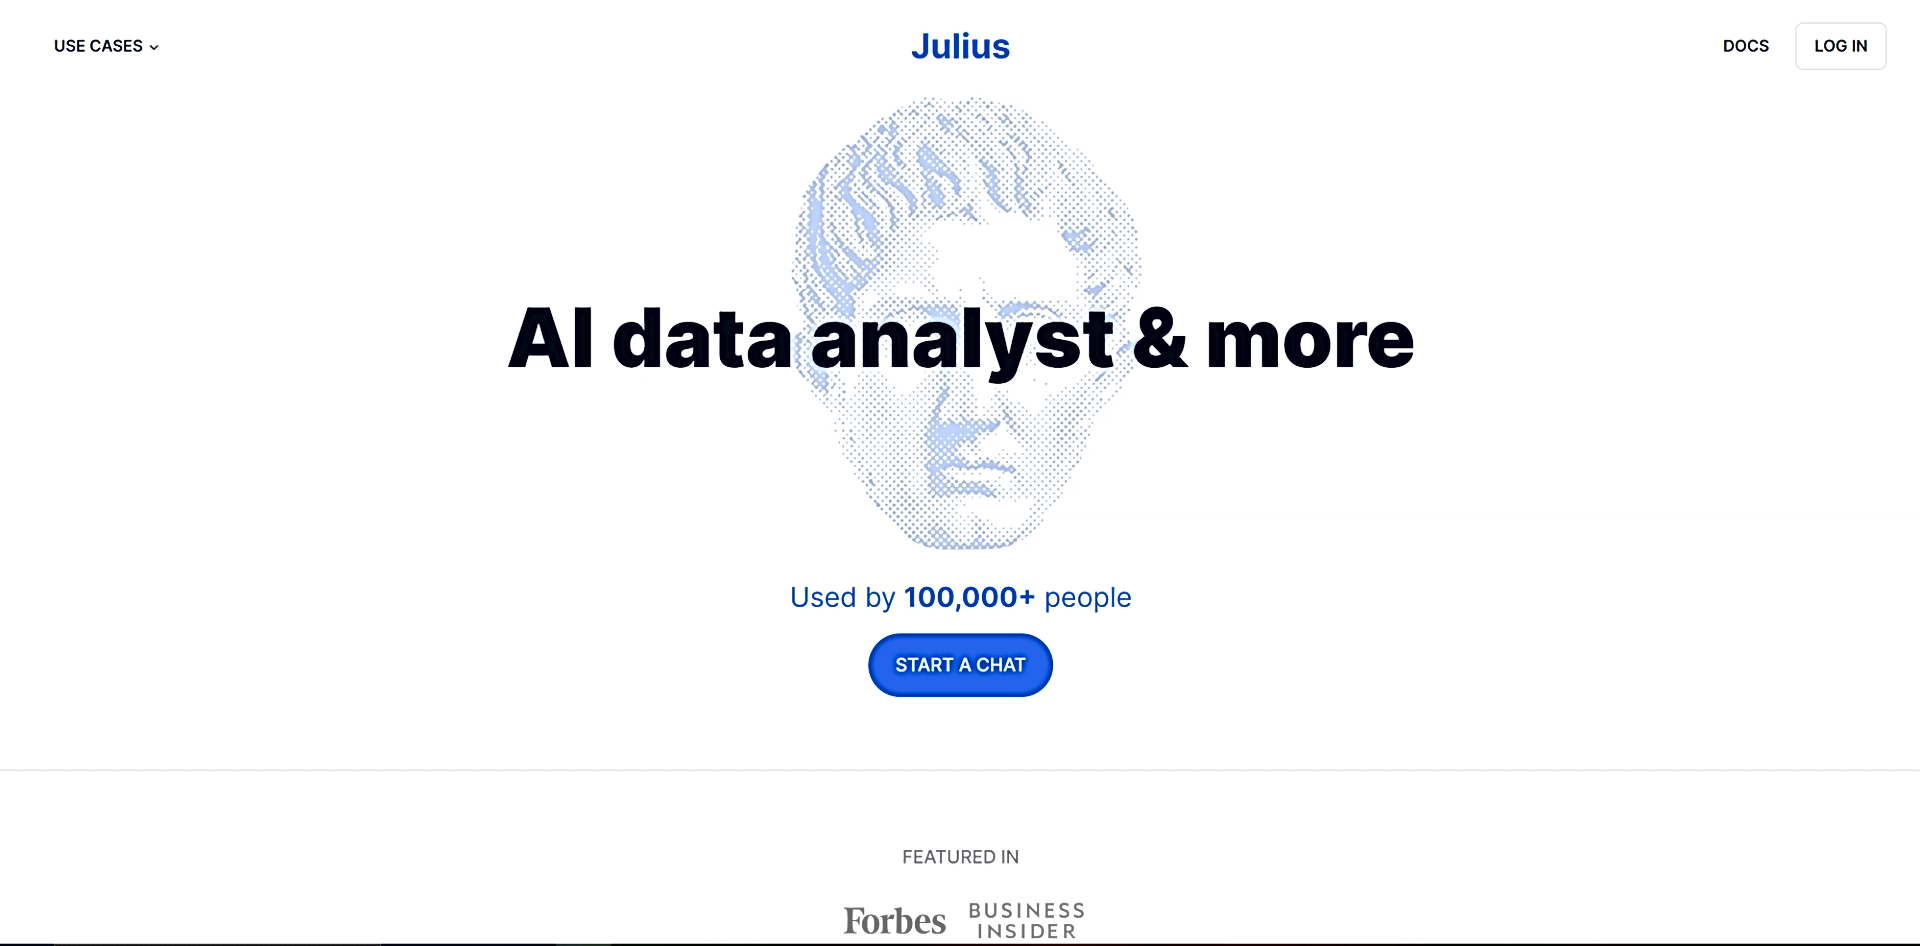 Julius featured